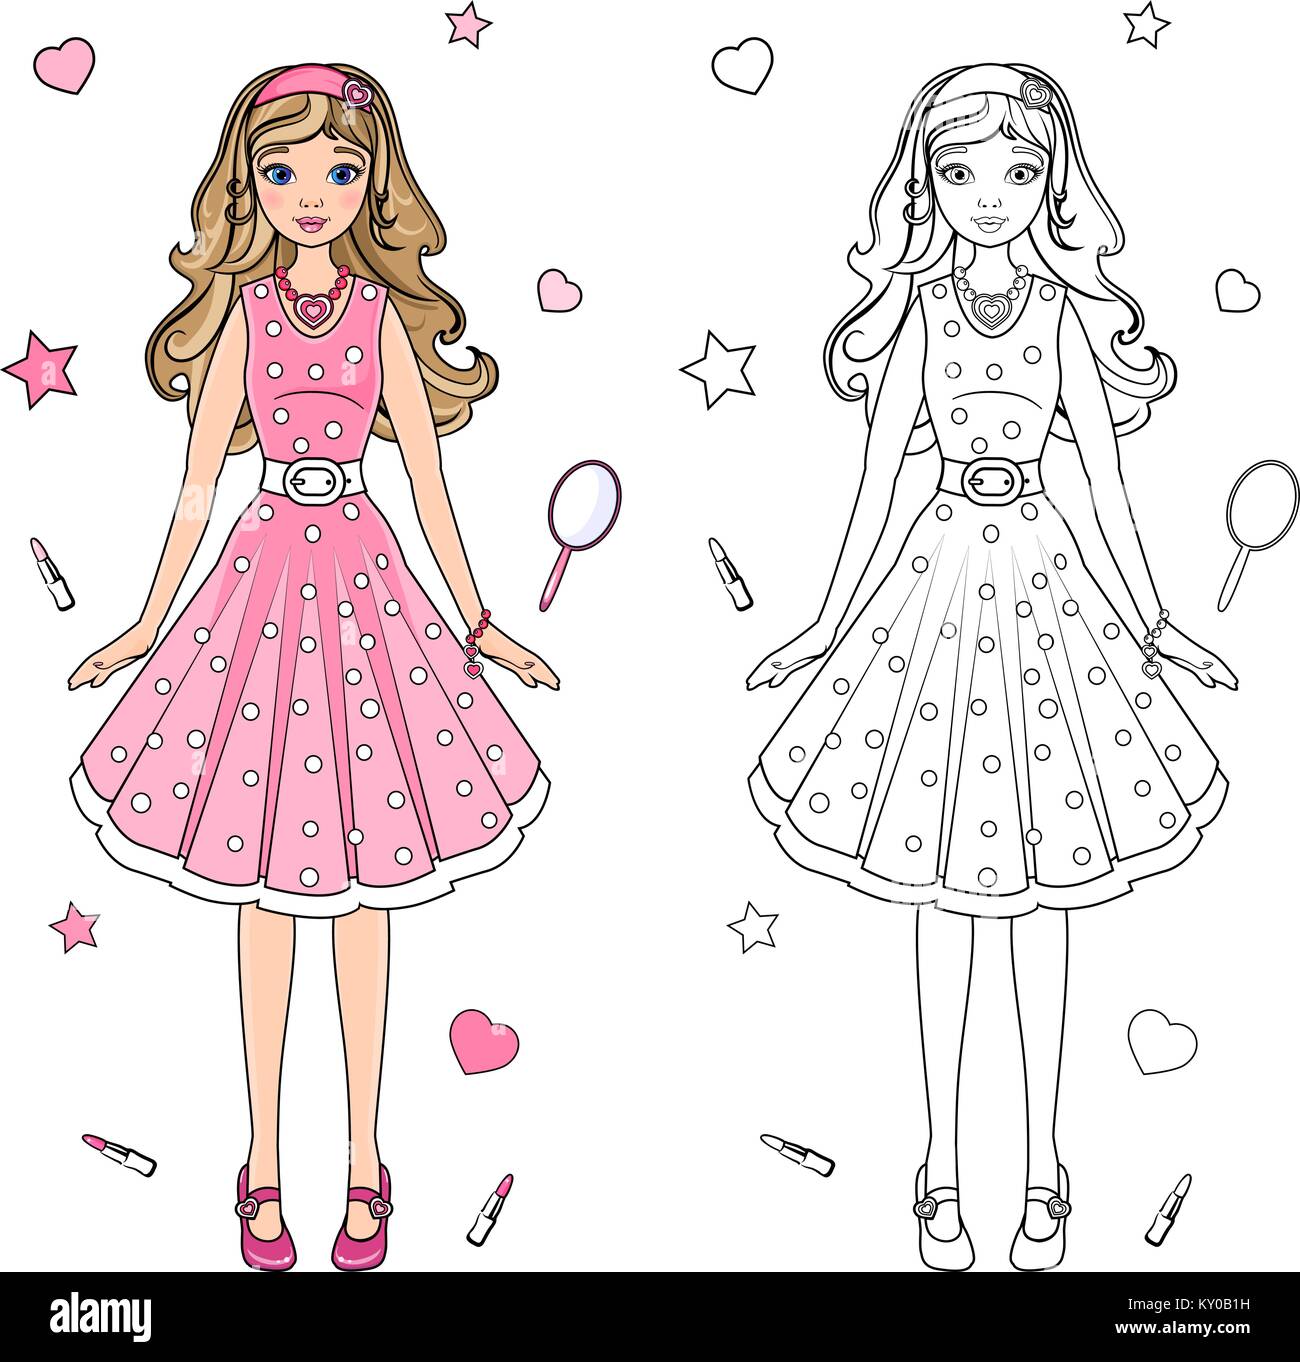 Livre de coloriage poupée dans une robe rose Image Vectorielle Stock - Alamy